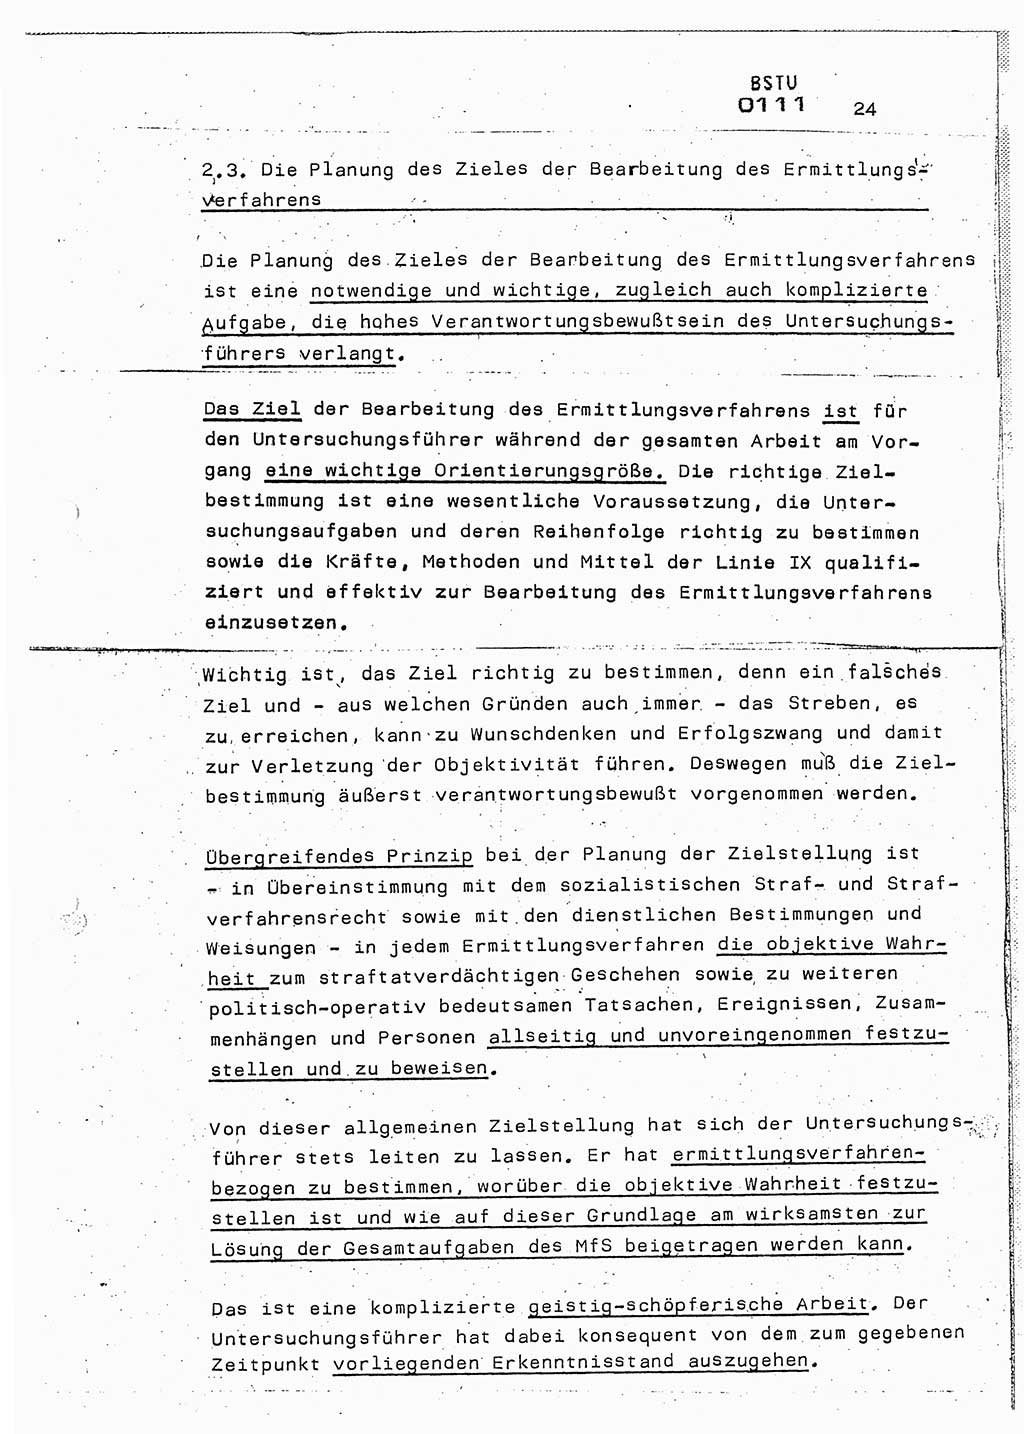 Lektion Ministerium für Staatssicherheit (MfS) [Deutsche Demokratische Republik (DDR)], Hauptabteilung (HA) Ⅸ, Berlin 1987, Seite 24 (Lekt. Pln. Bearb. EV MfS DDR HA Ⅸ /87 1987, S. 24)